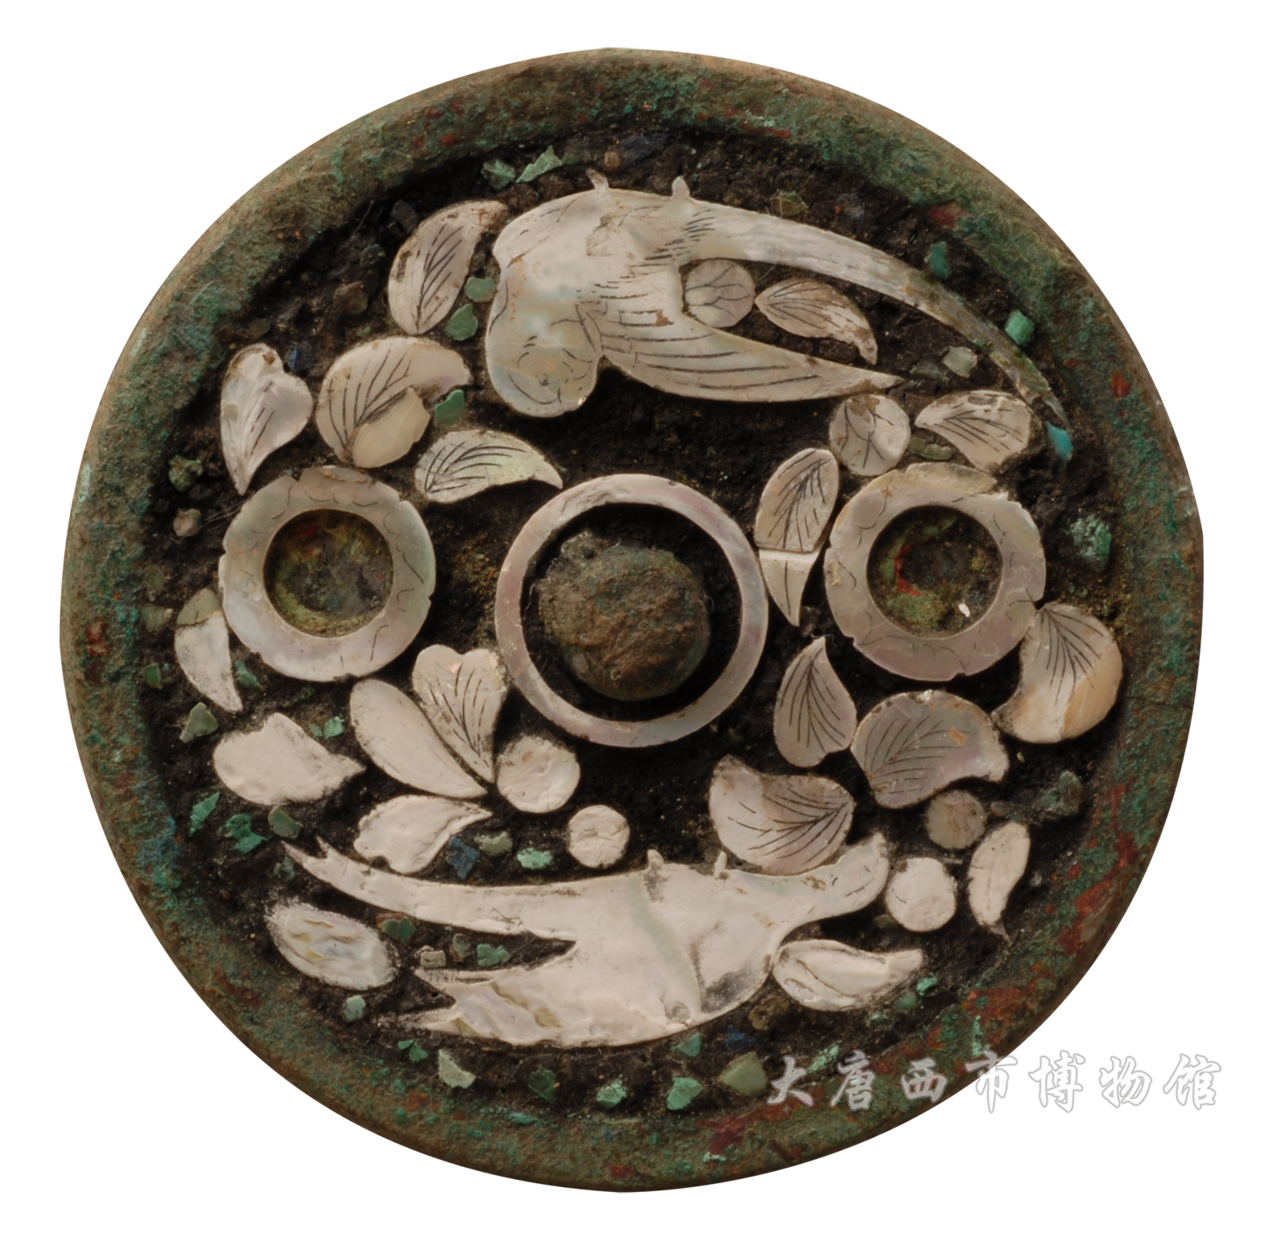 唐鑲綠松石螺鈿鸚鵡紋鏡